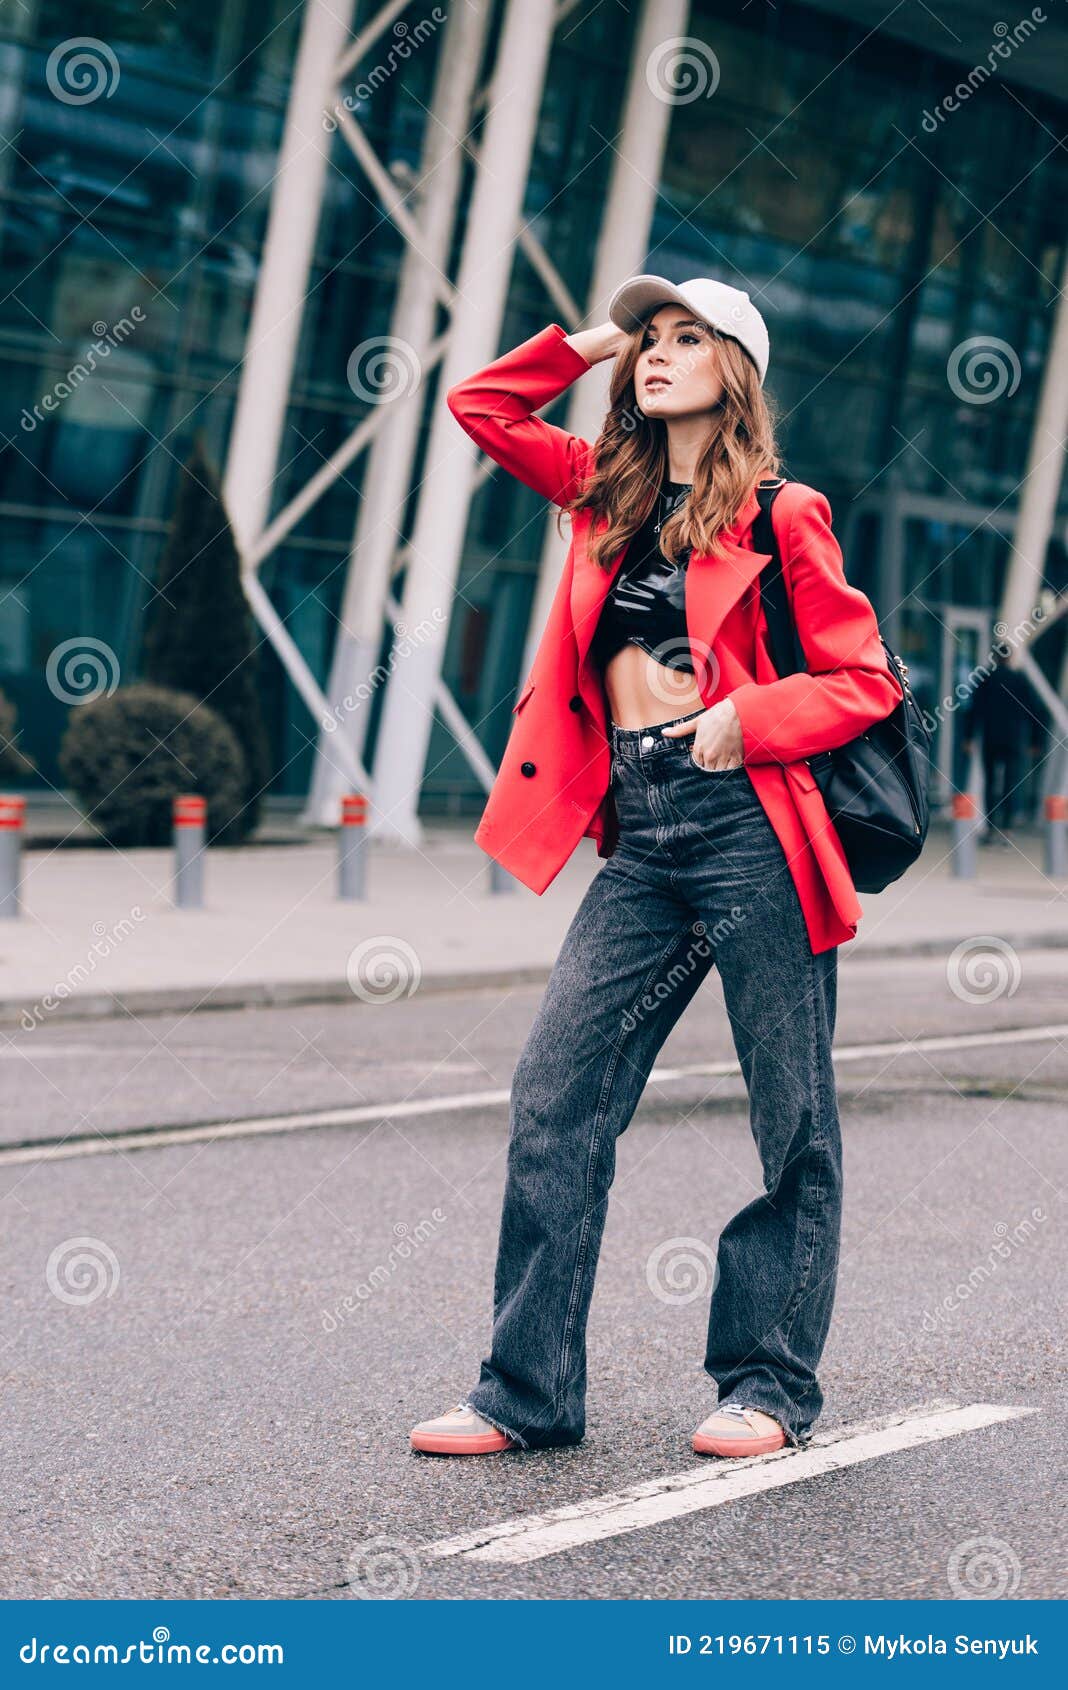 Glamour Mujer En Outfit Posando Contra El Edificio De Fondo Urbano Look De Moda. Retrato De Moda Al Aire Libre de archivo - Imagen de morena, moderno: 219671115